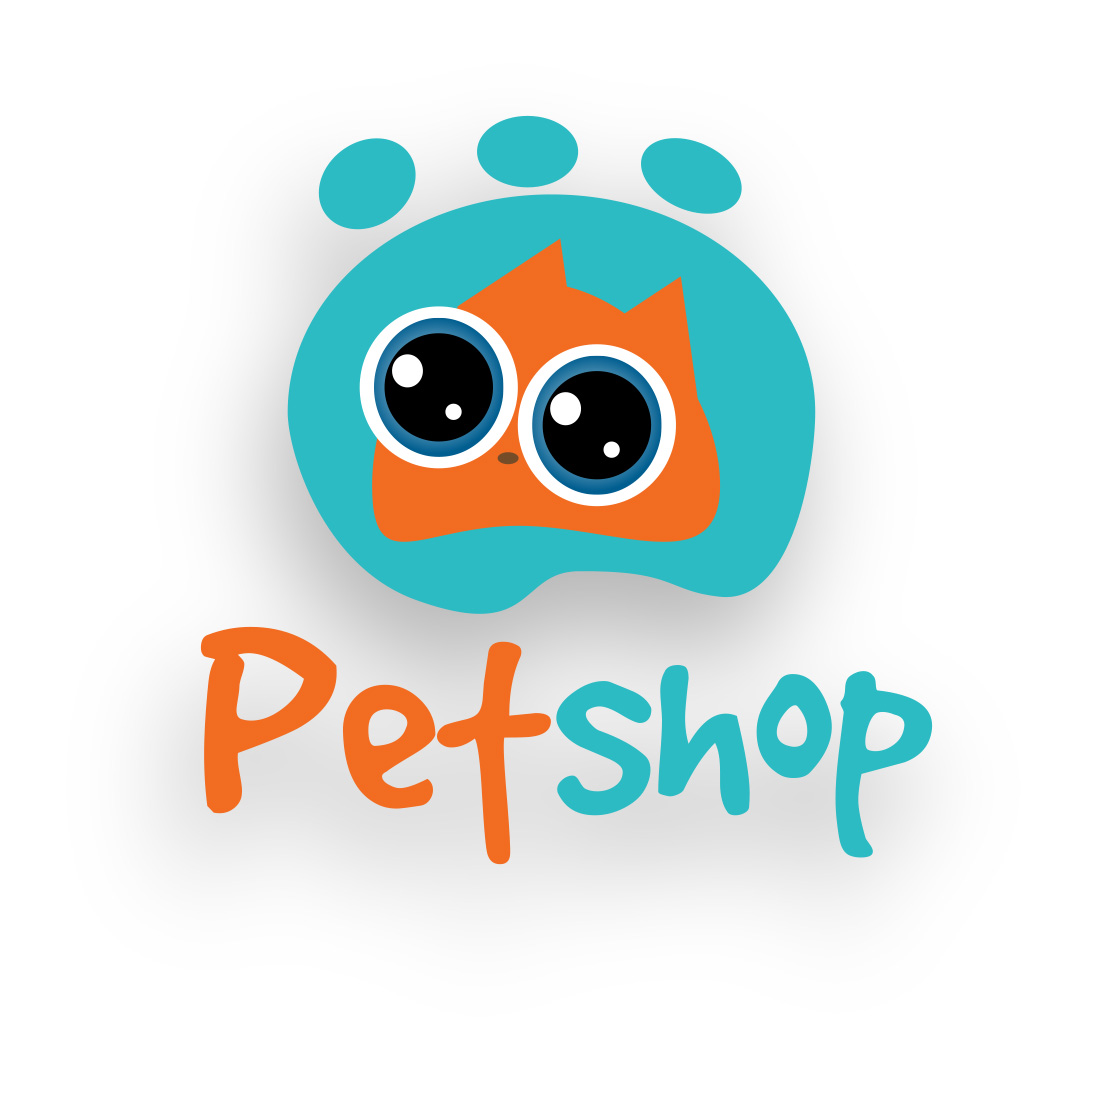 Petshop logo design cover image.